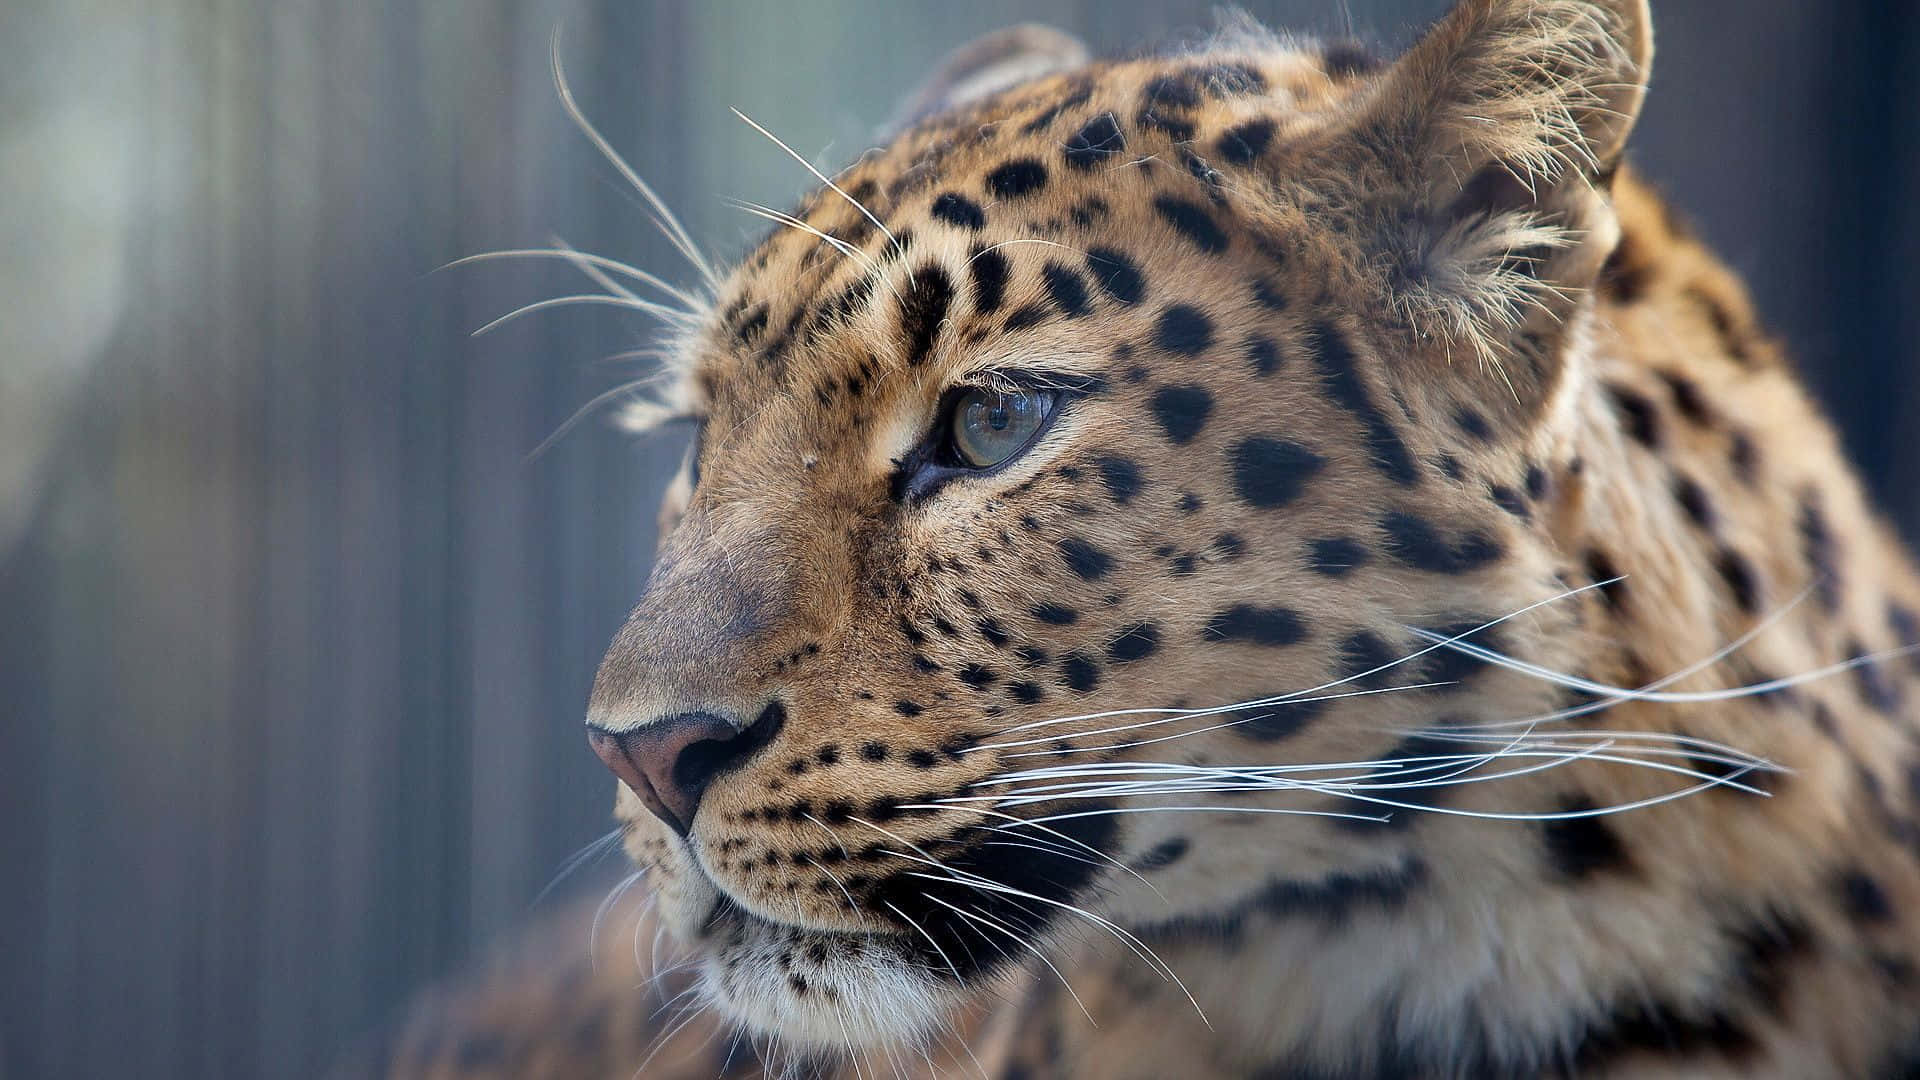 Lamajestuosidad De Un Leopardo De Ojos Rosados En Su Entorno Natural.